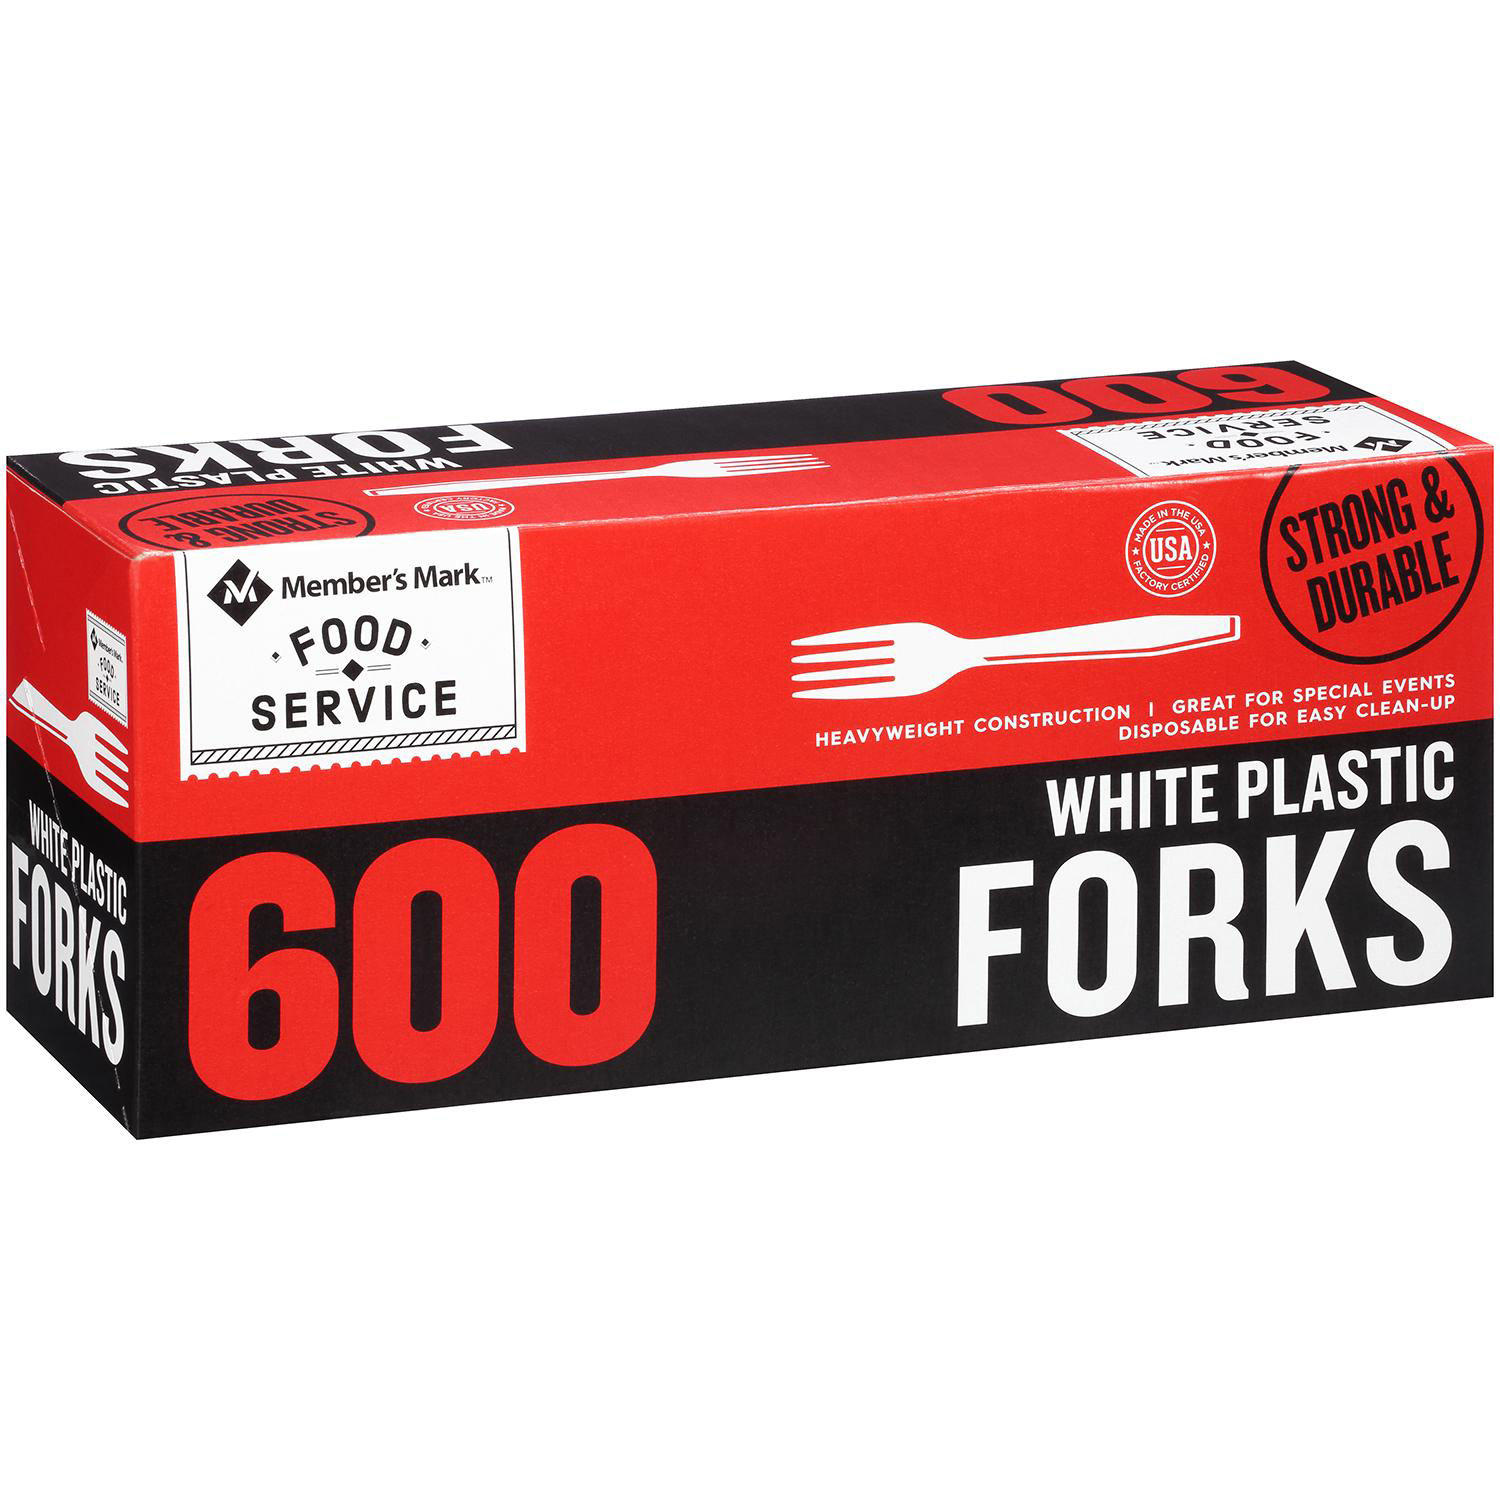 Member’s Mark White Plastic Forks (600 ct.)